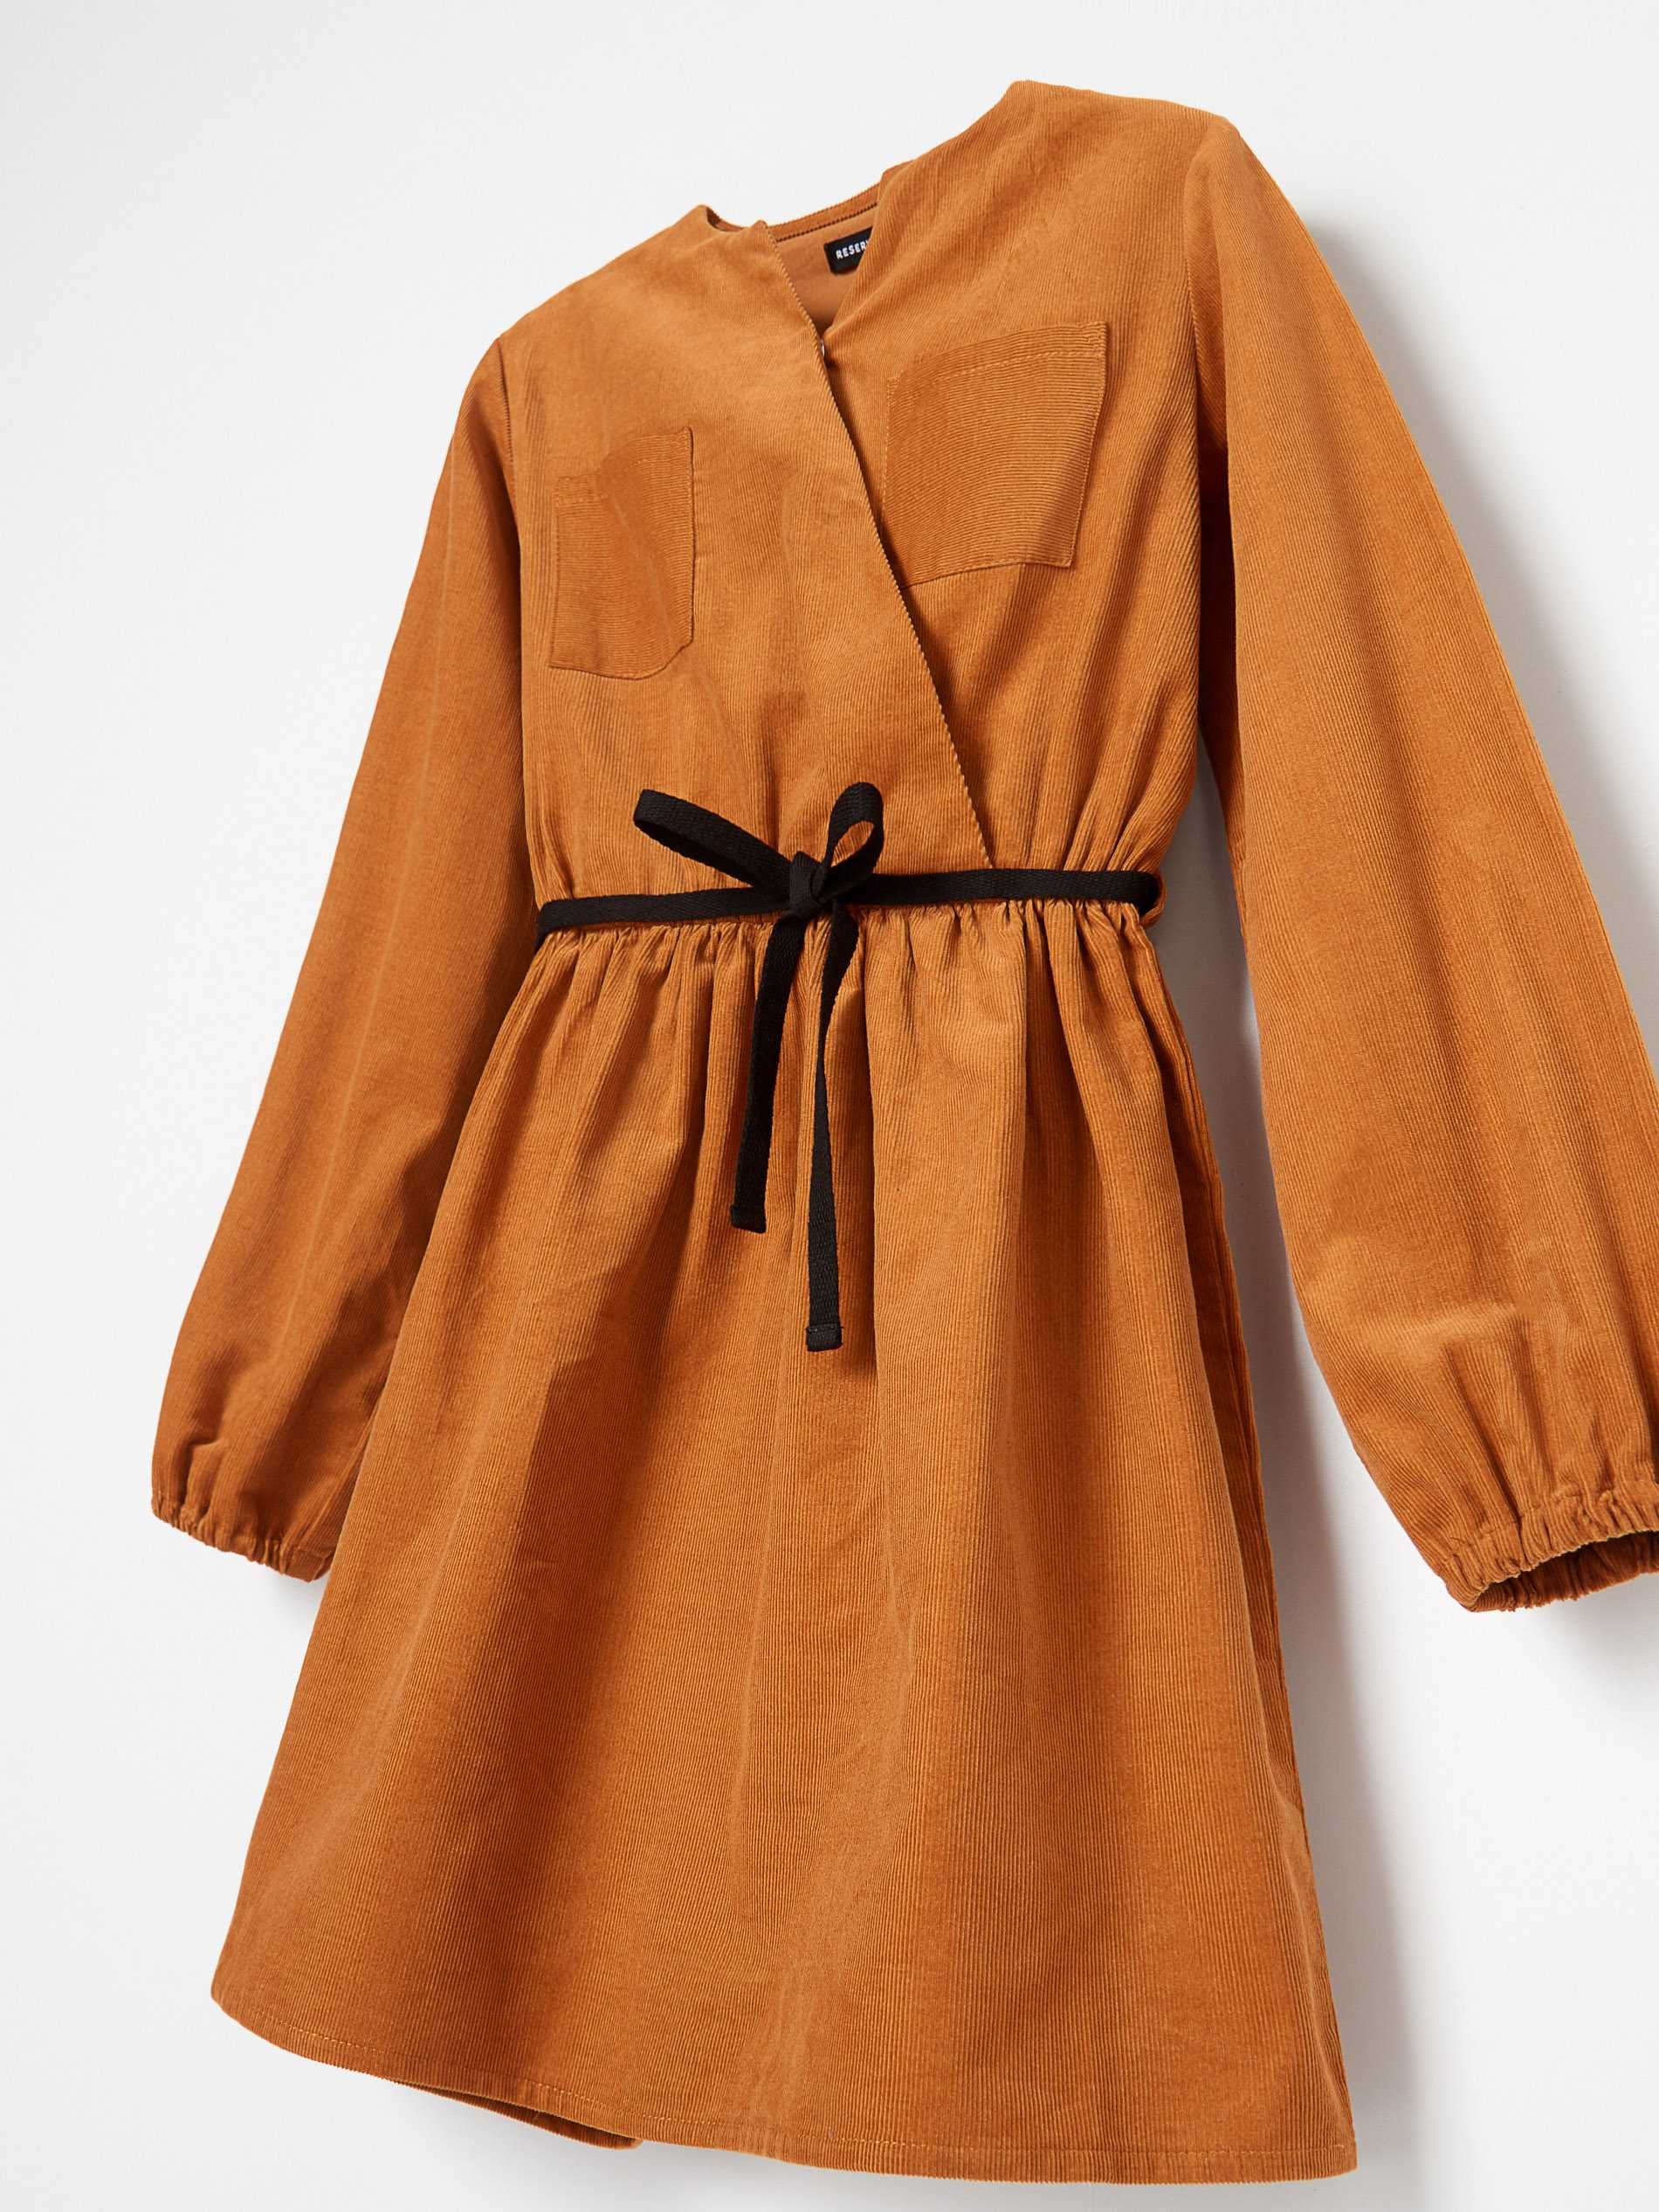 Вельветовое платье на девочку с кармашками и поясок р. 146 Reserved.